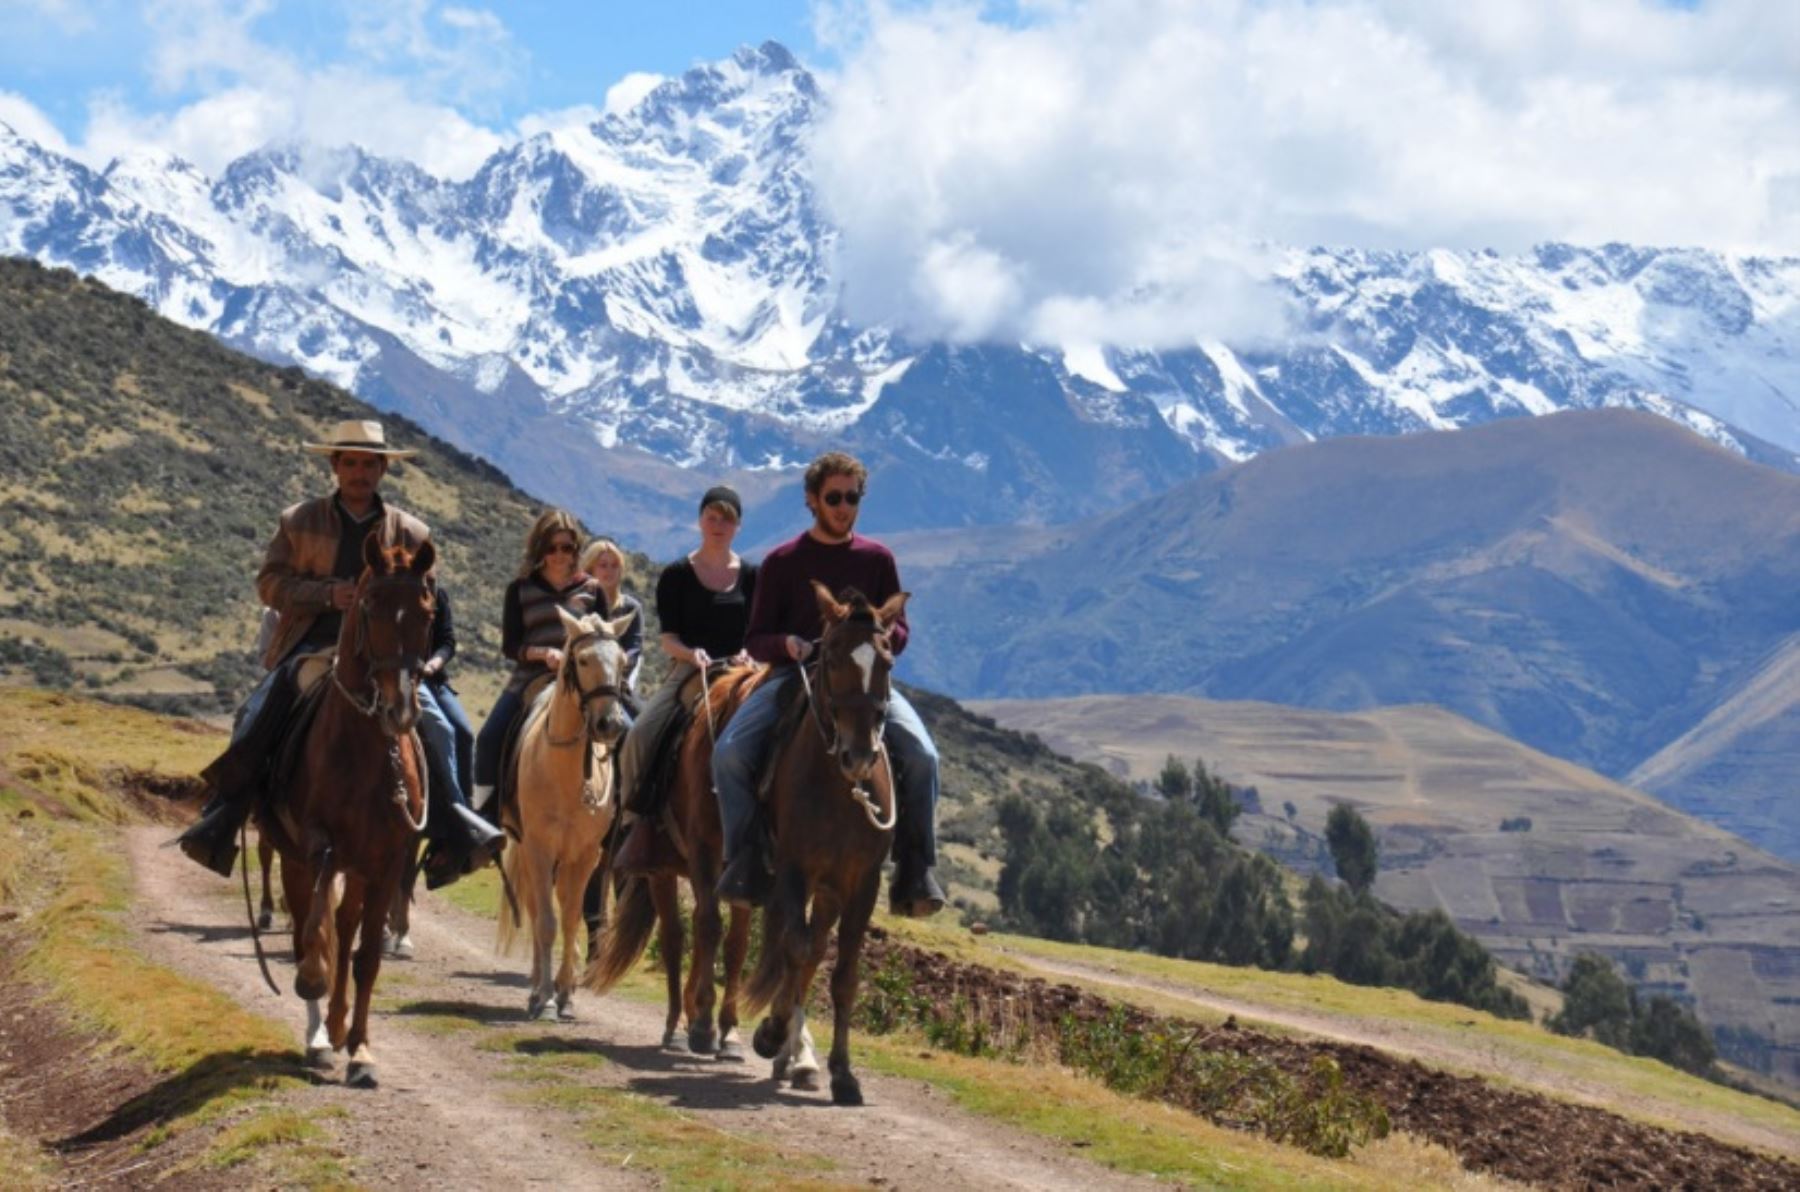 Los interesados en recibir el 2018 y aprovechar el feriado largo por Año Nuevo visitando destinos idóneos para el turismo rural comunitario en el Perú, pueden aprovechar las más de 30 ofertas que ofrece el portal www.turismoruralcomunitario.com.pe con paquetes de viaje desde 55 soles. ANDINA/Difusión